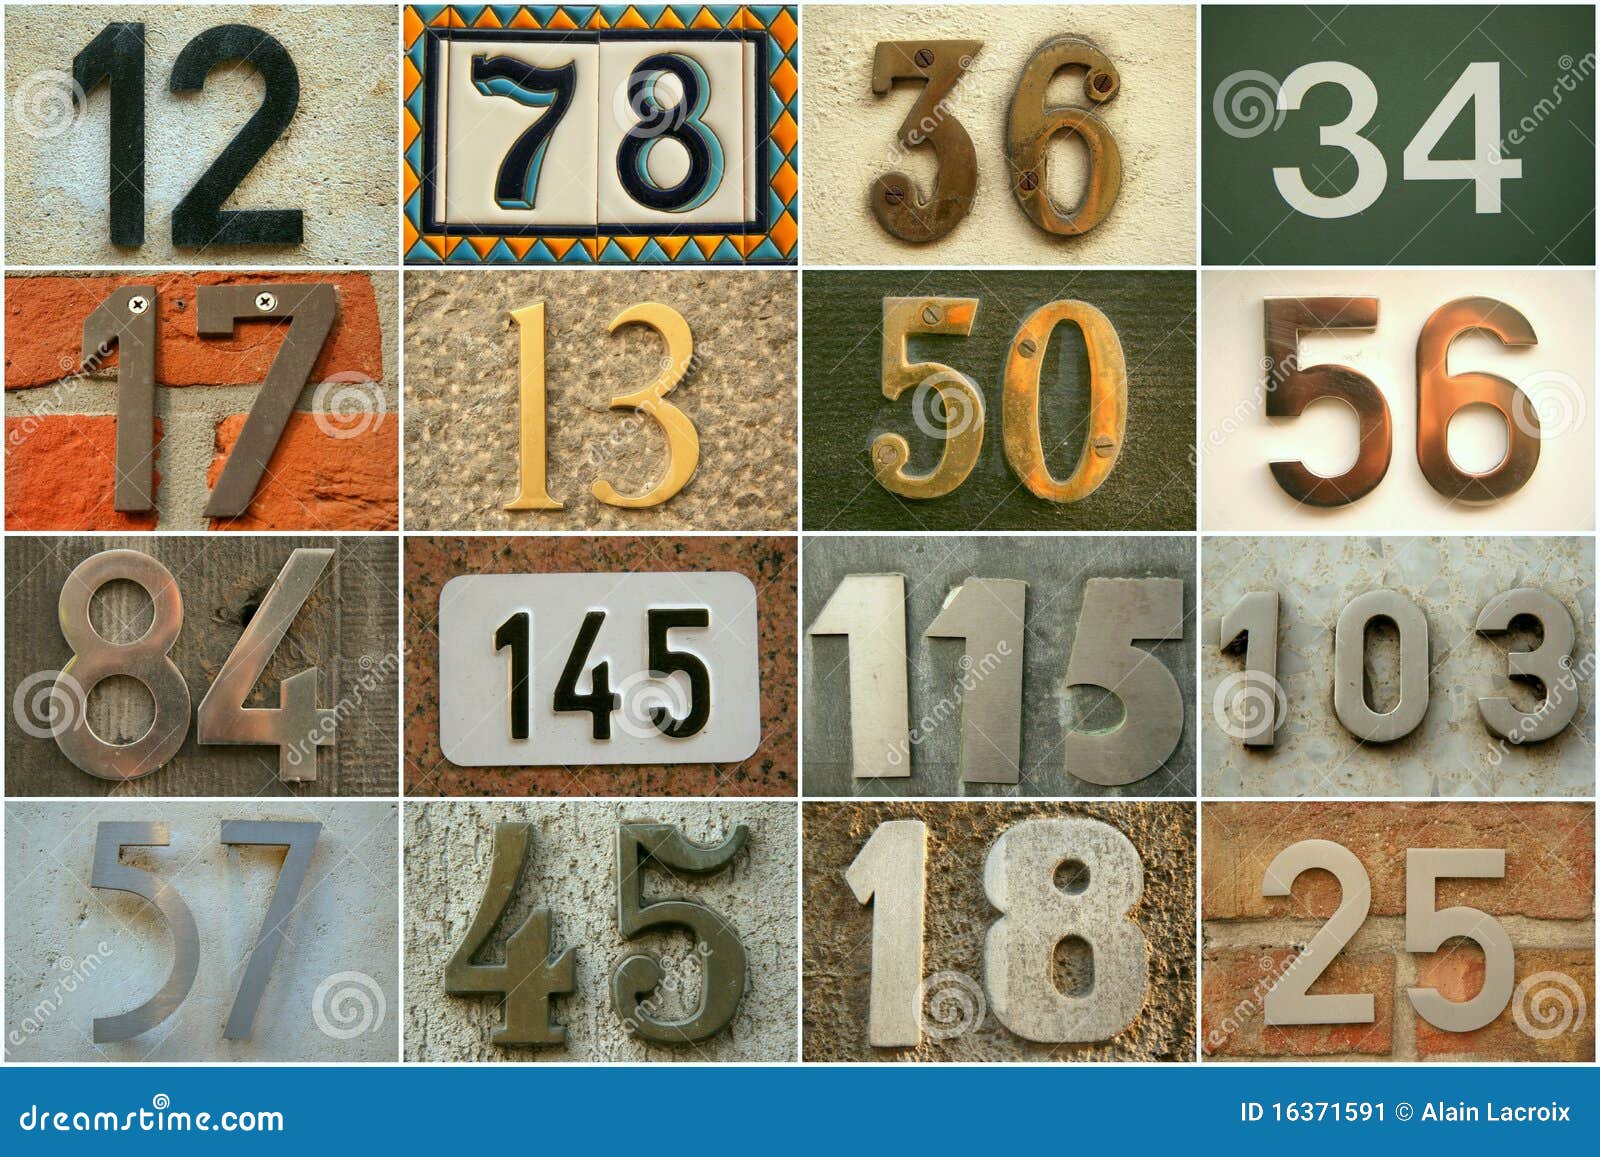 Números de casa imagen de archivo. Imagen de color, metal - 16371591